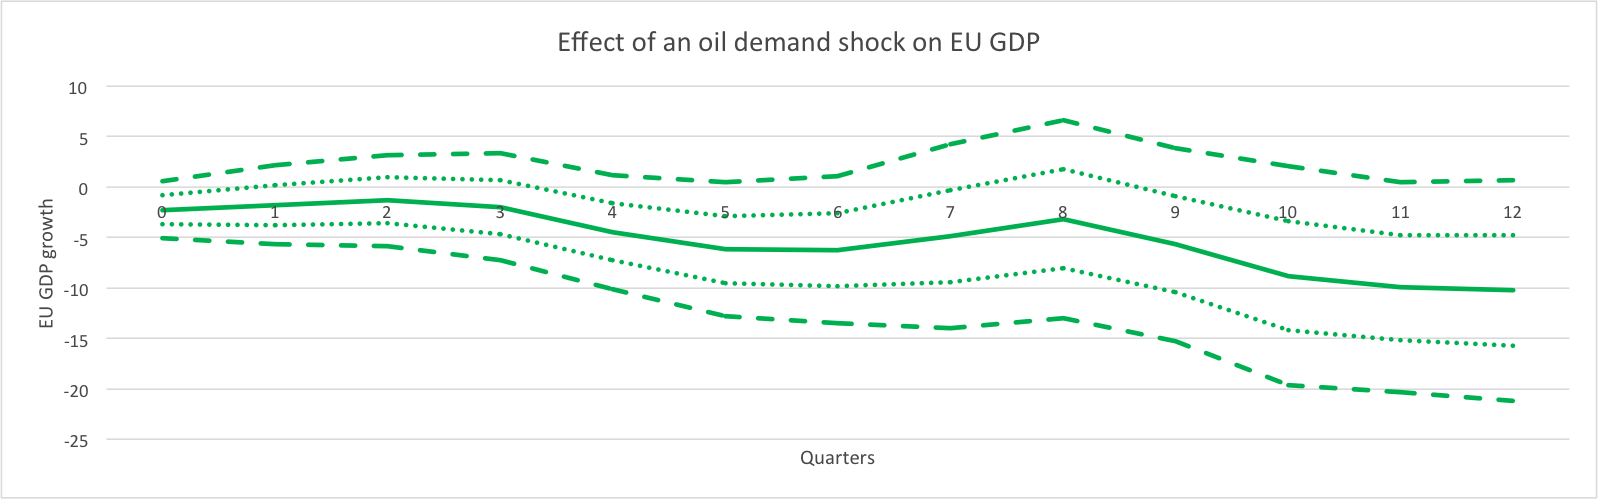 Effect of an Oil Demand Shock on EU GDP